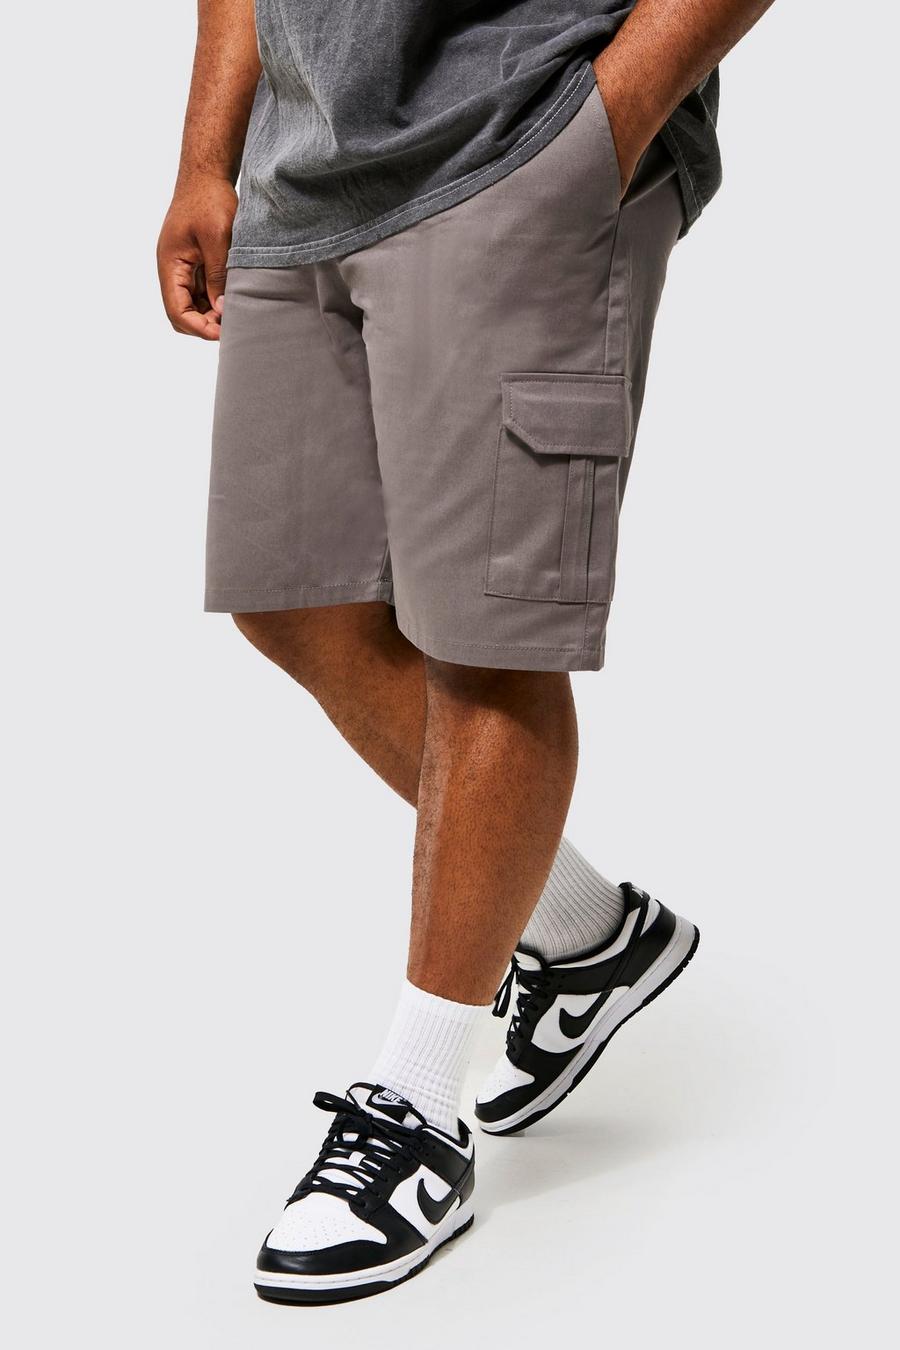 Pantalón corto Plus cargo con cintura elástica, Charcoal gris